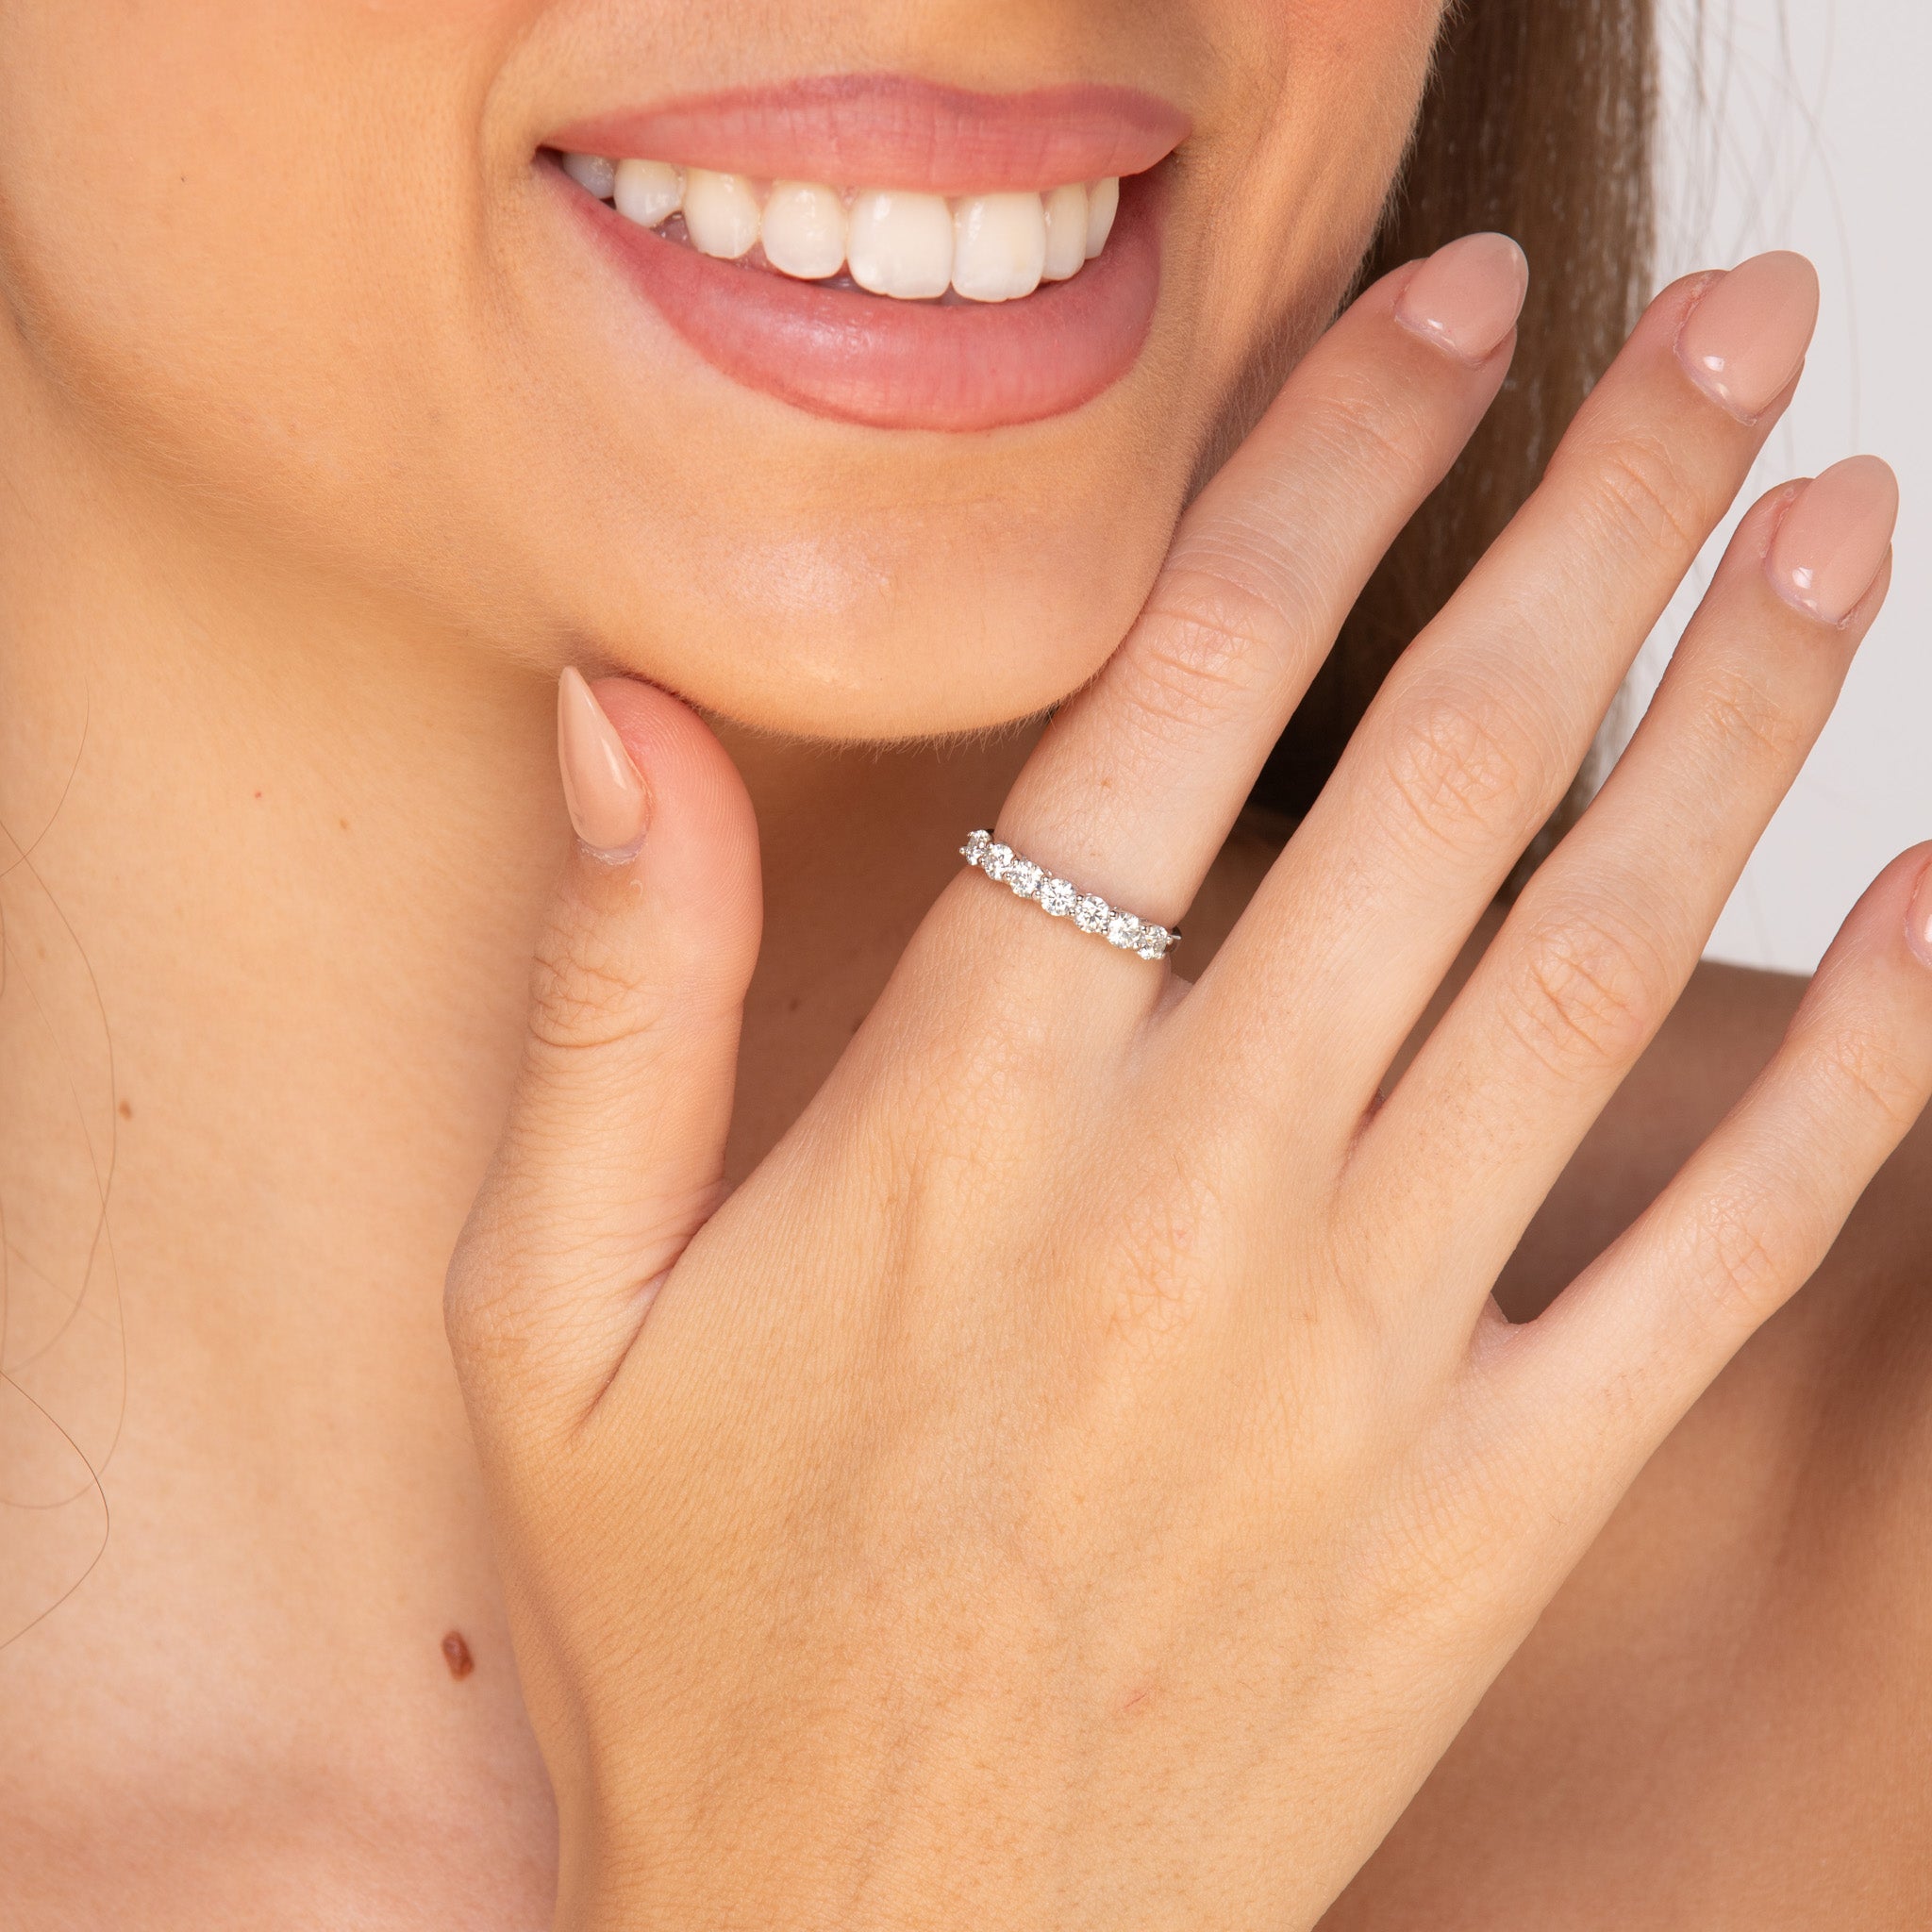 The Eternal Love - 1.0 crt Moissanite Diamond Ring